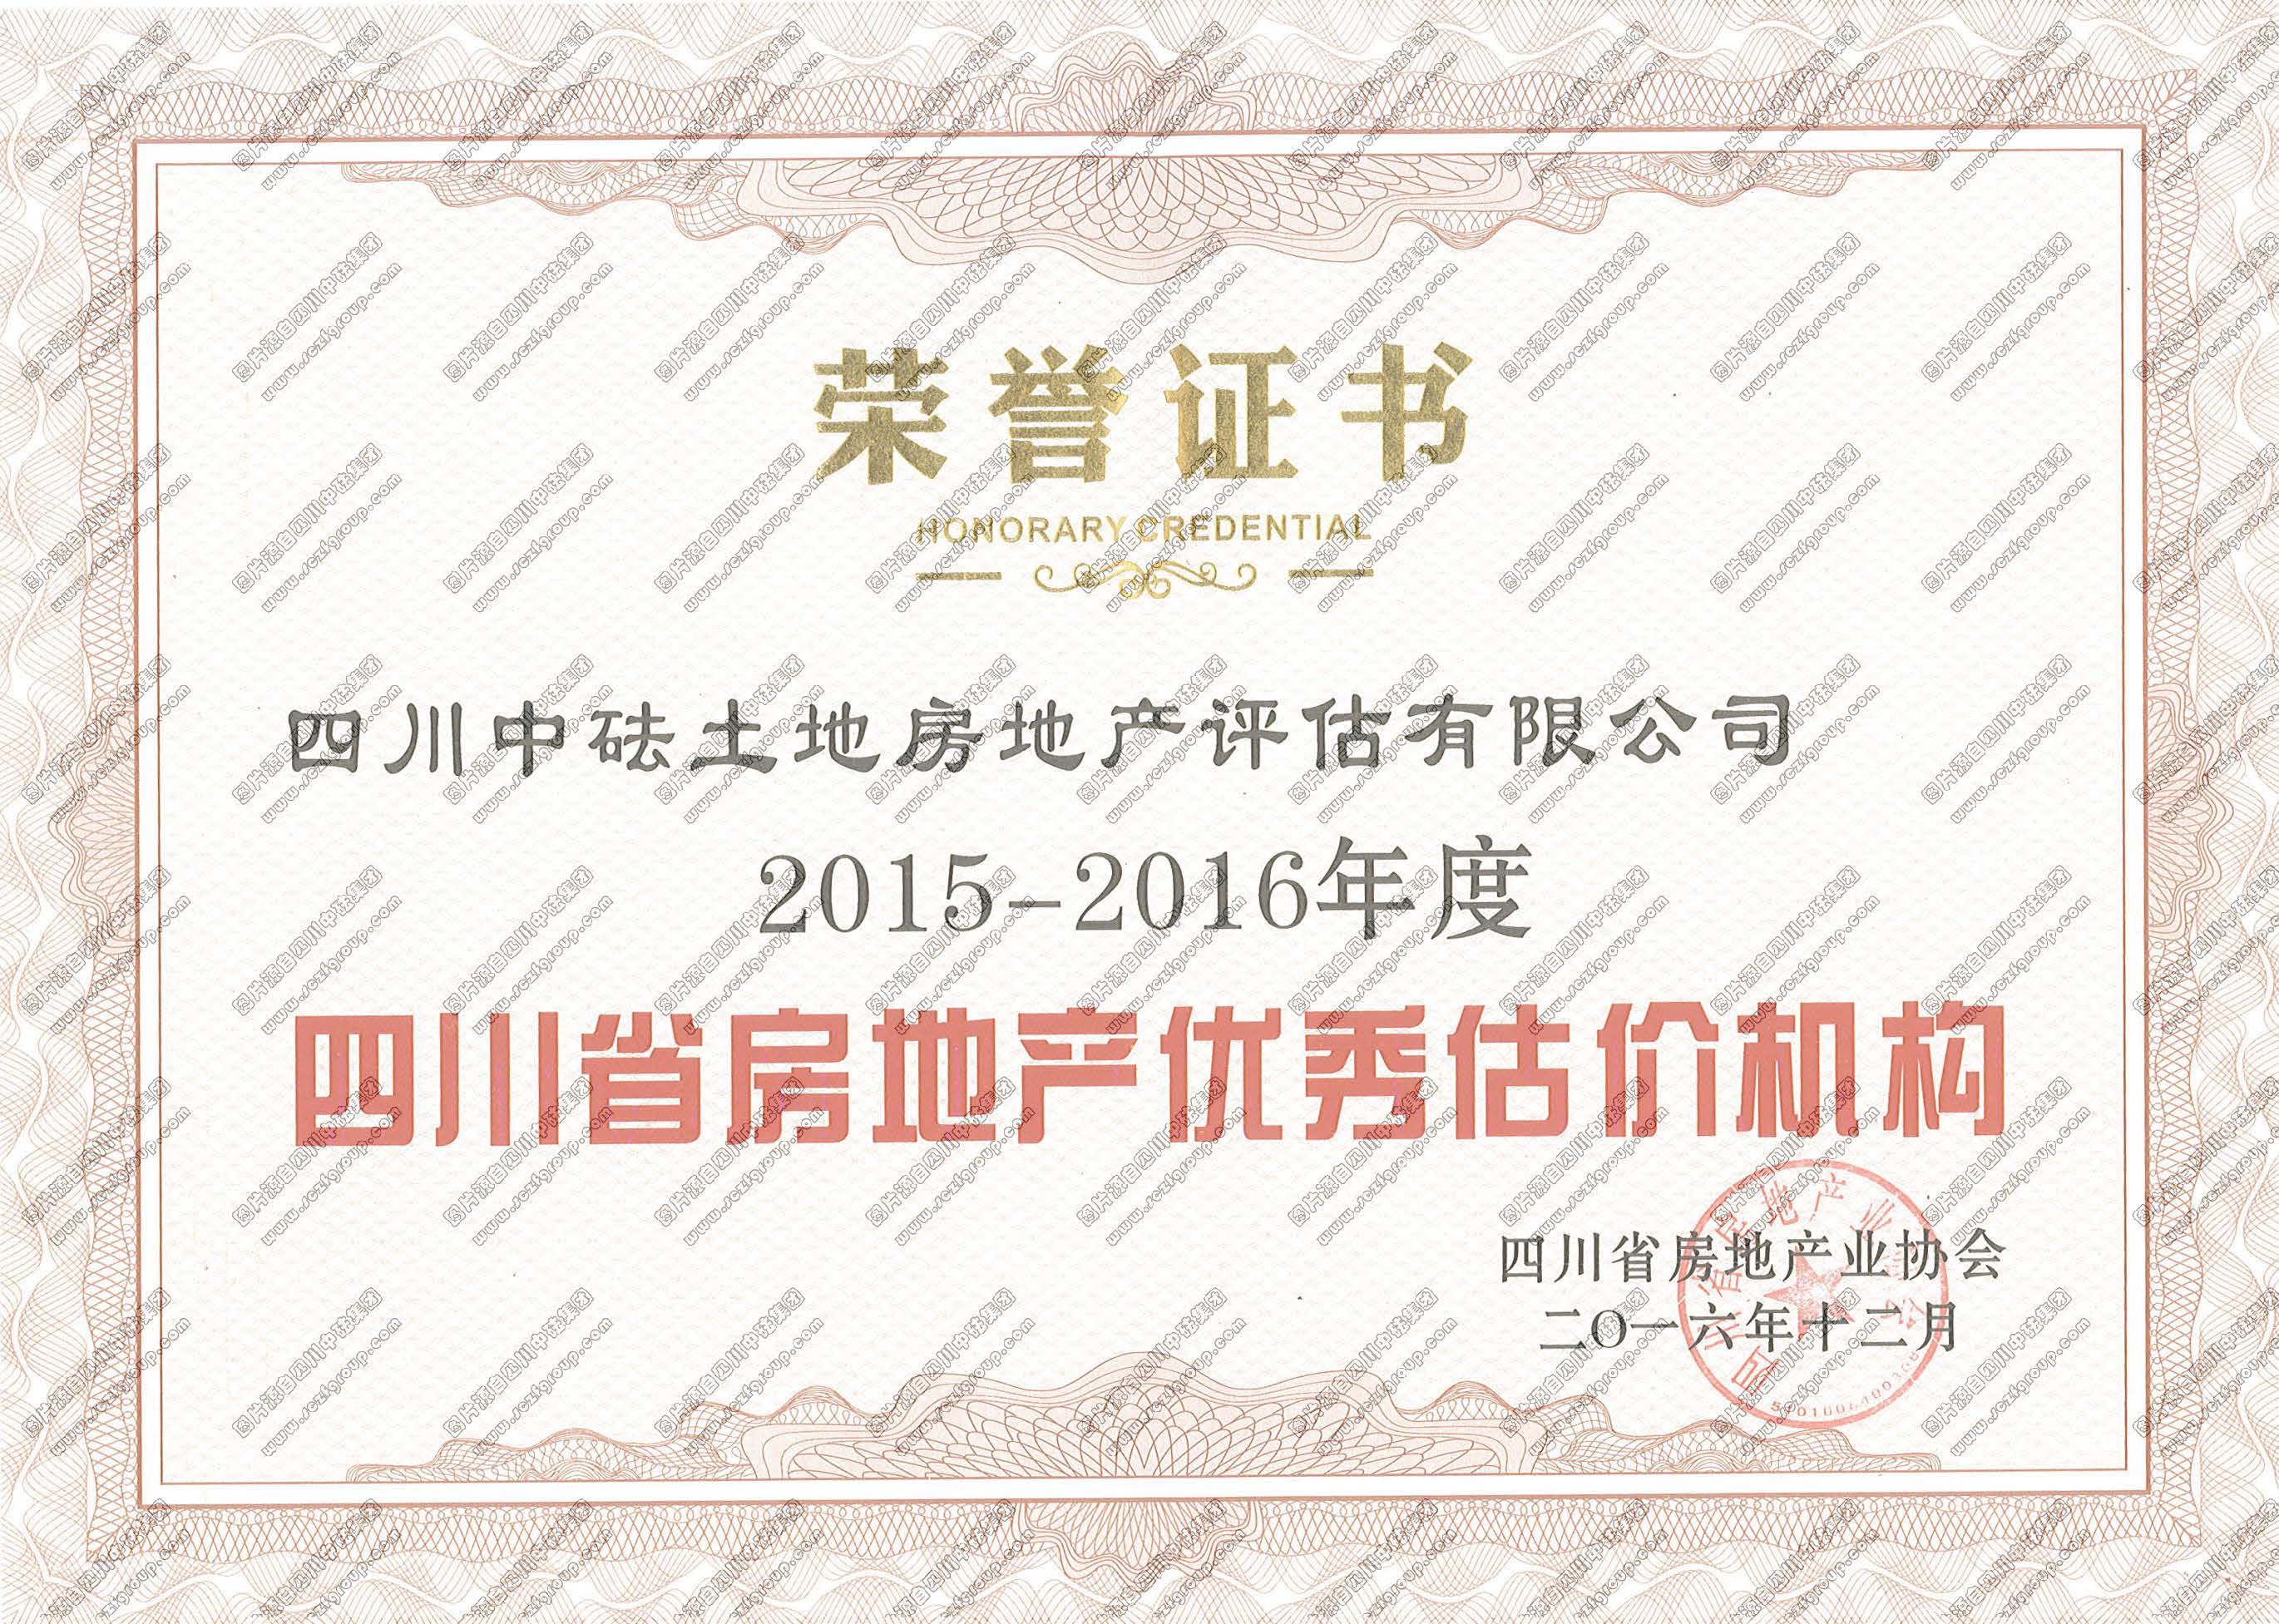 2015-2016年度四川省房地产优秀估价机构